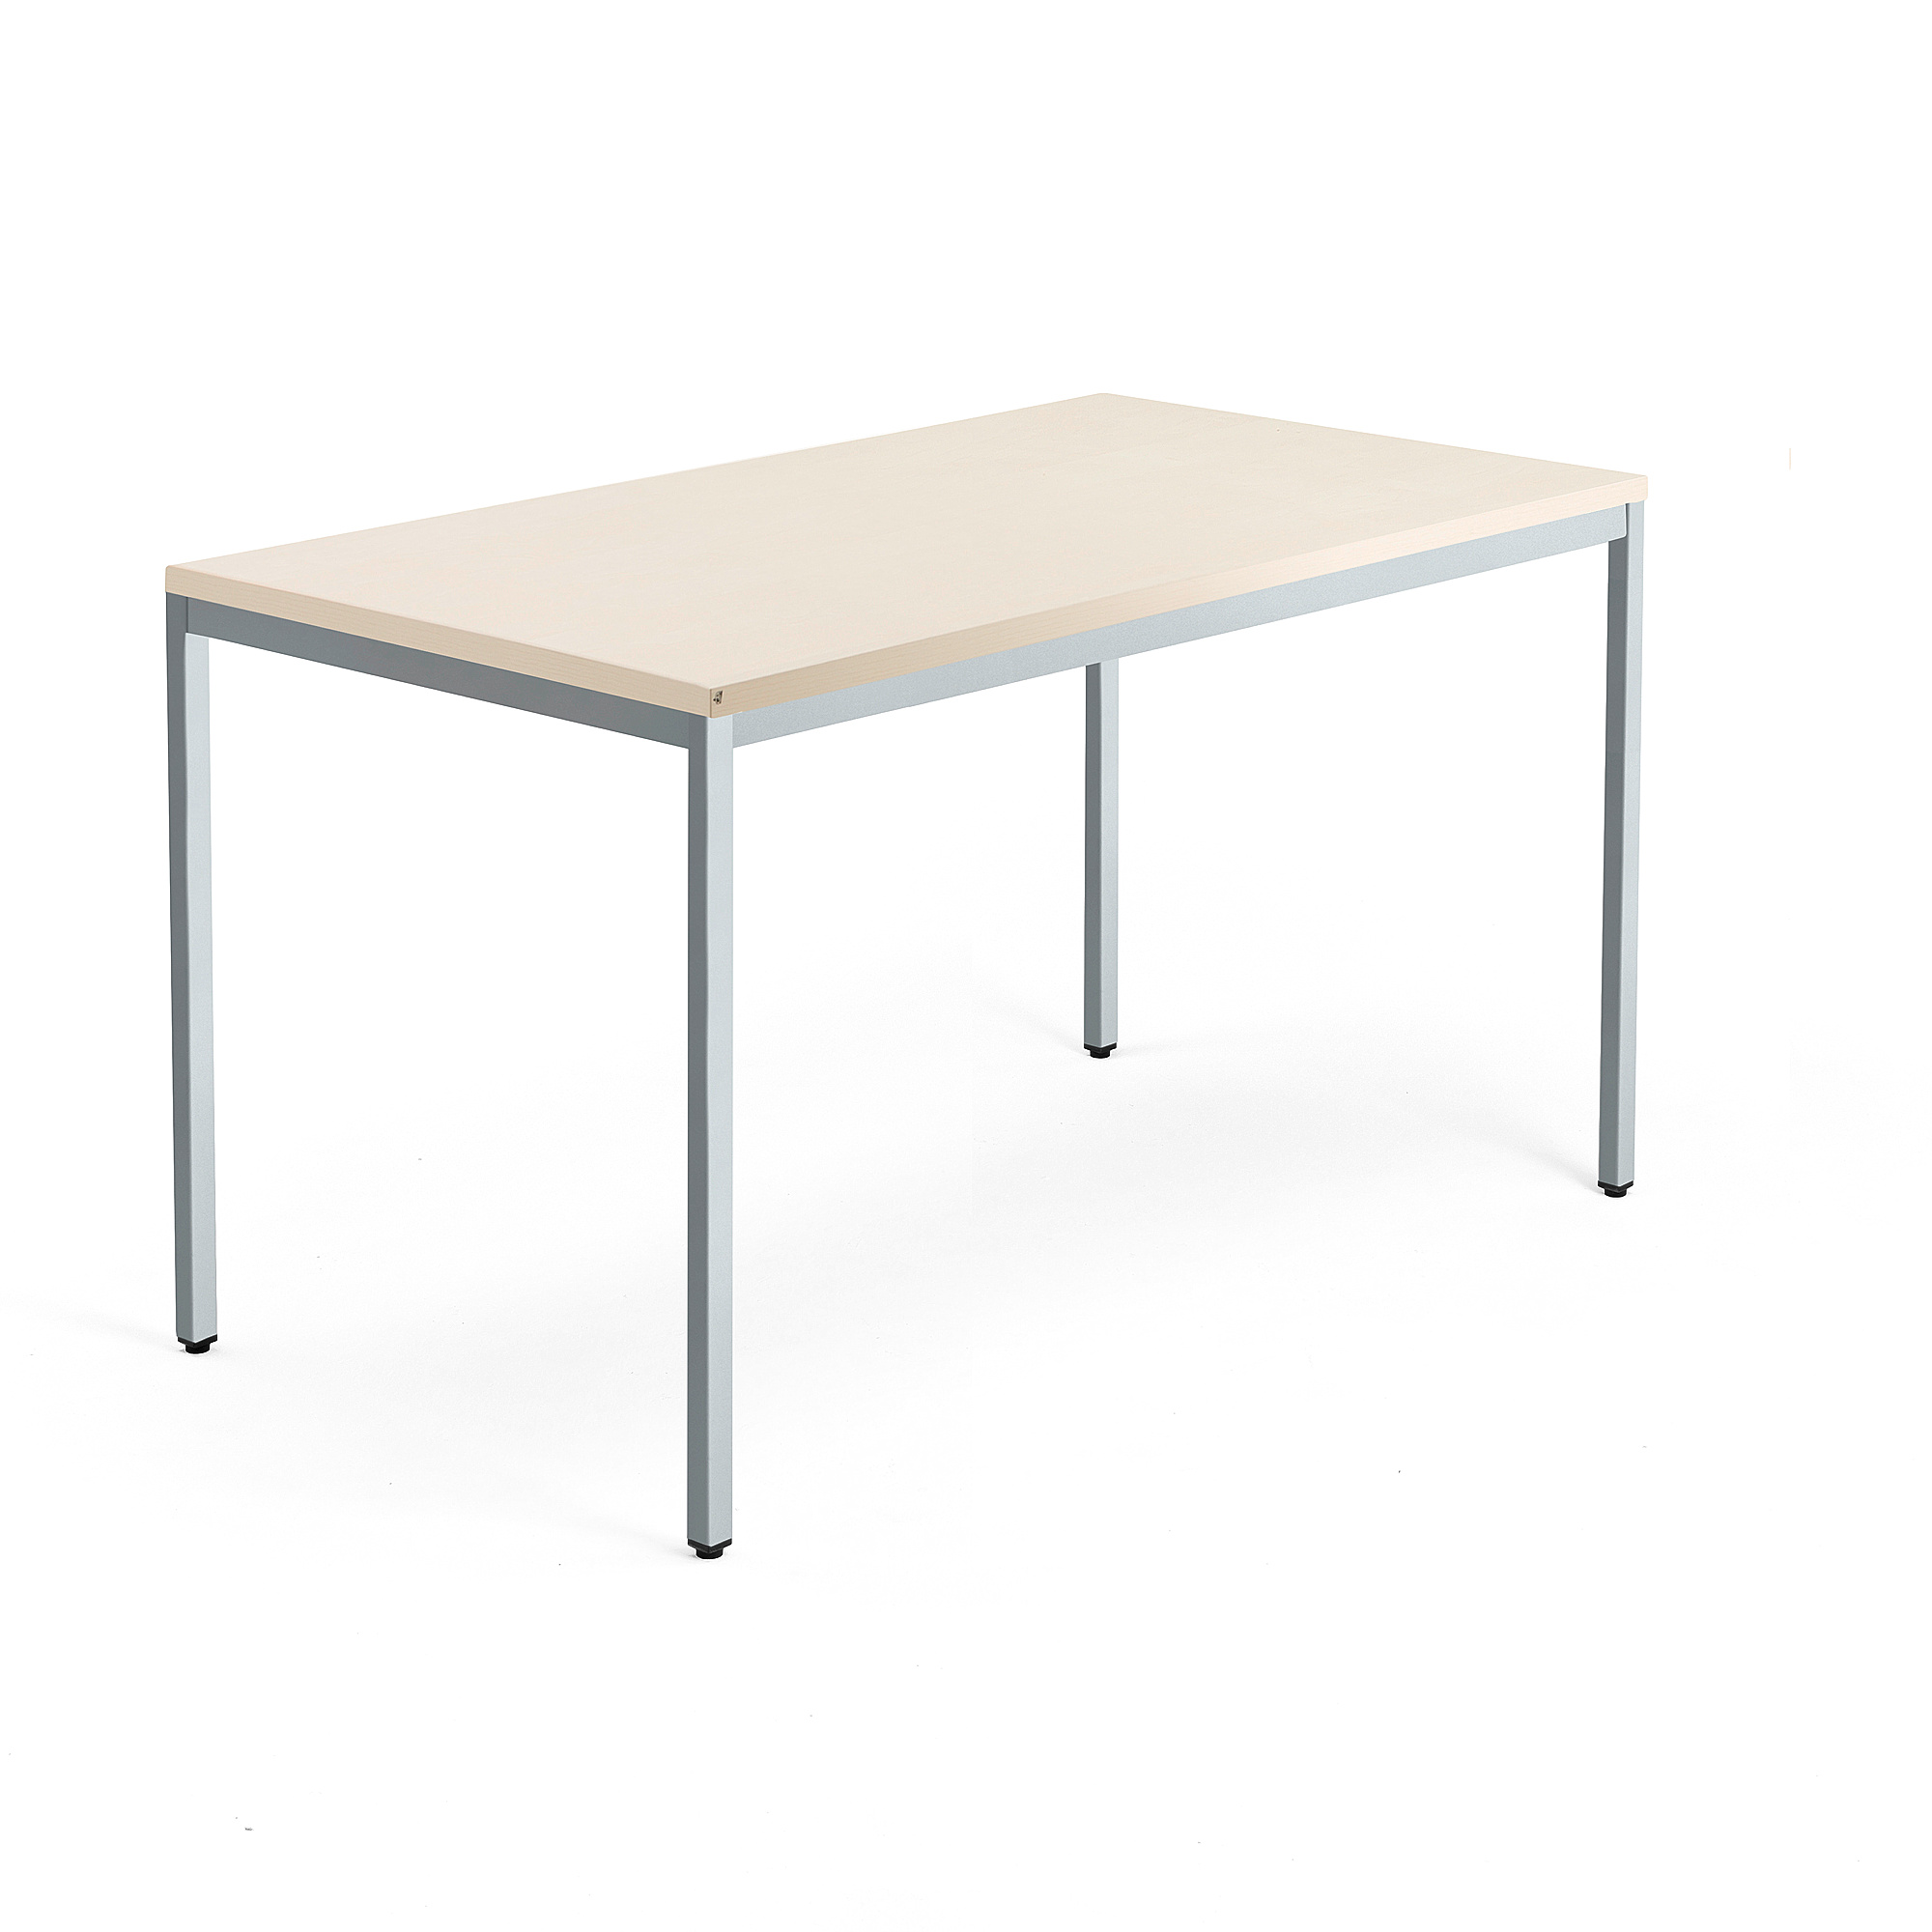 Psací stůl QBUS, 4 nohy, 1400x800 mm, stříbrný rám, bříza